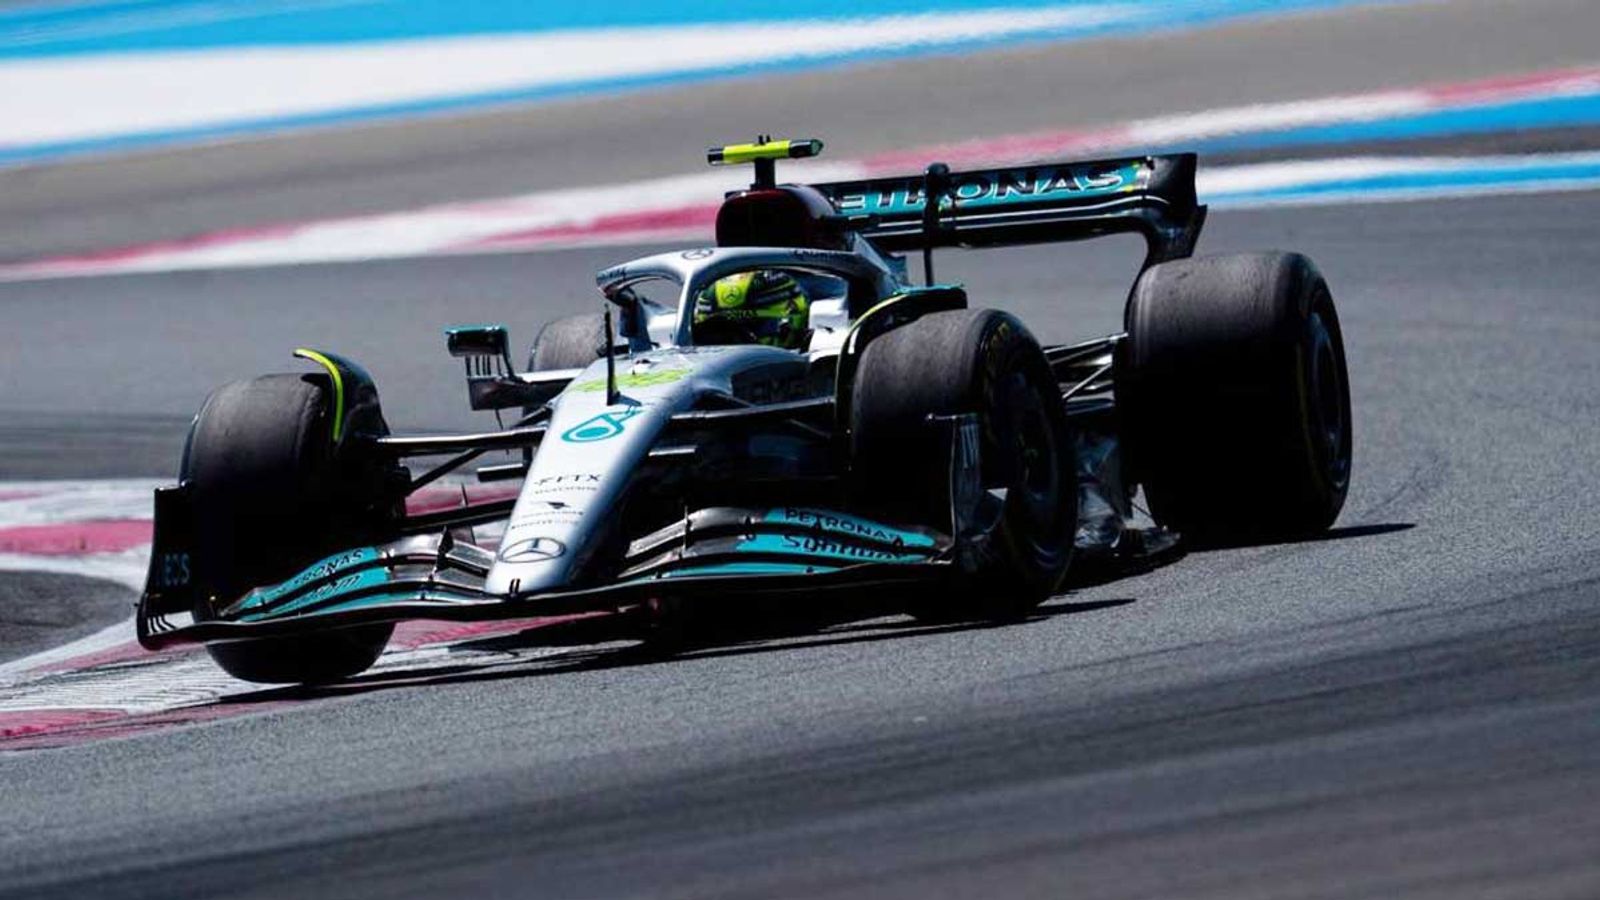 Formel 1 Hamilton, Russell und Piastri drehen erste Testrunden in Frankreich und Spanien Formel 1 News Sky Sport